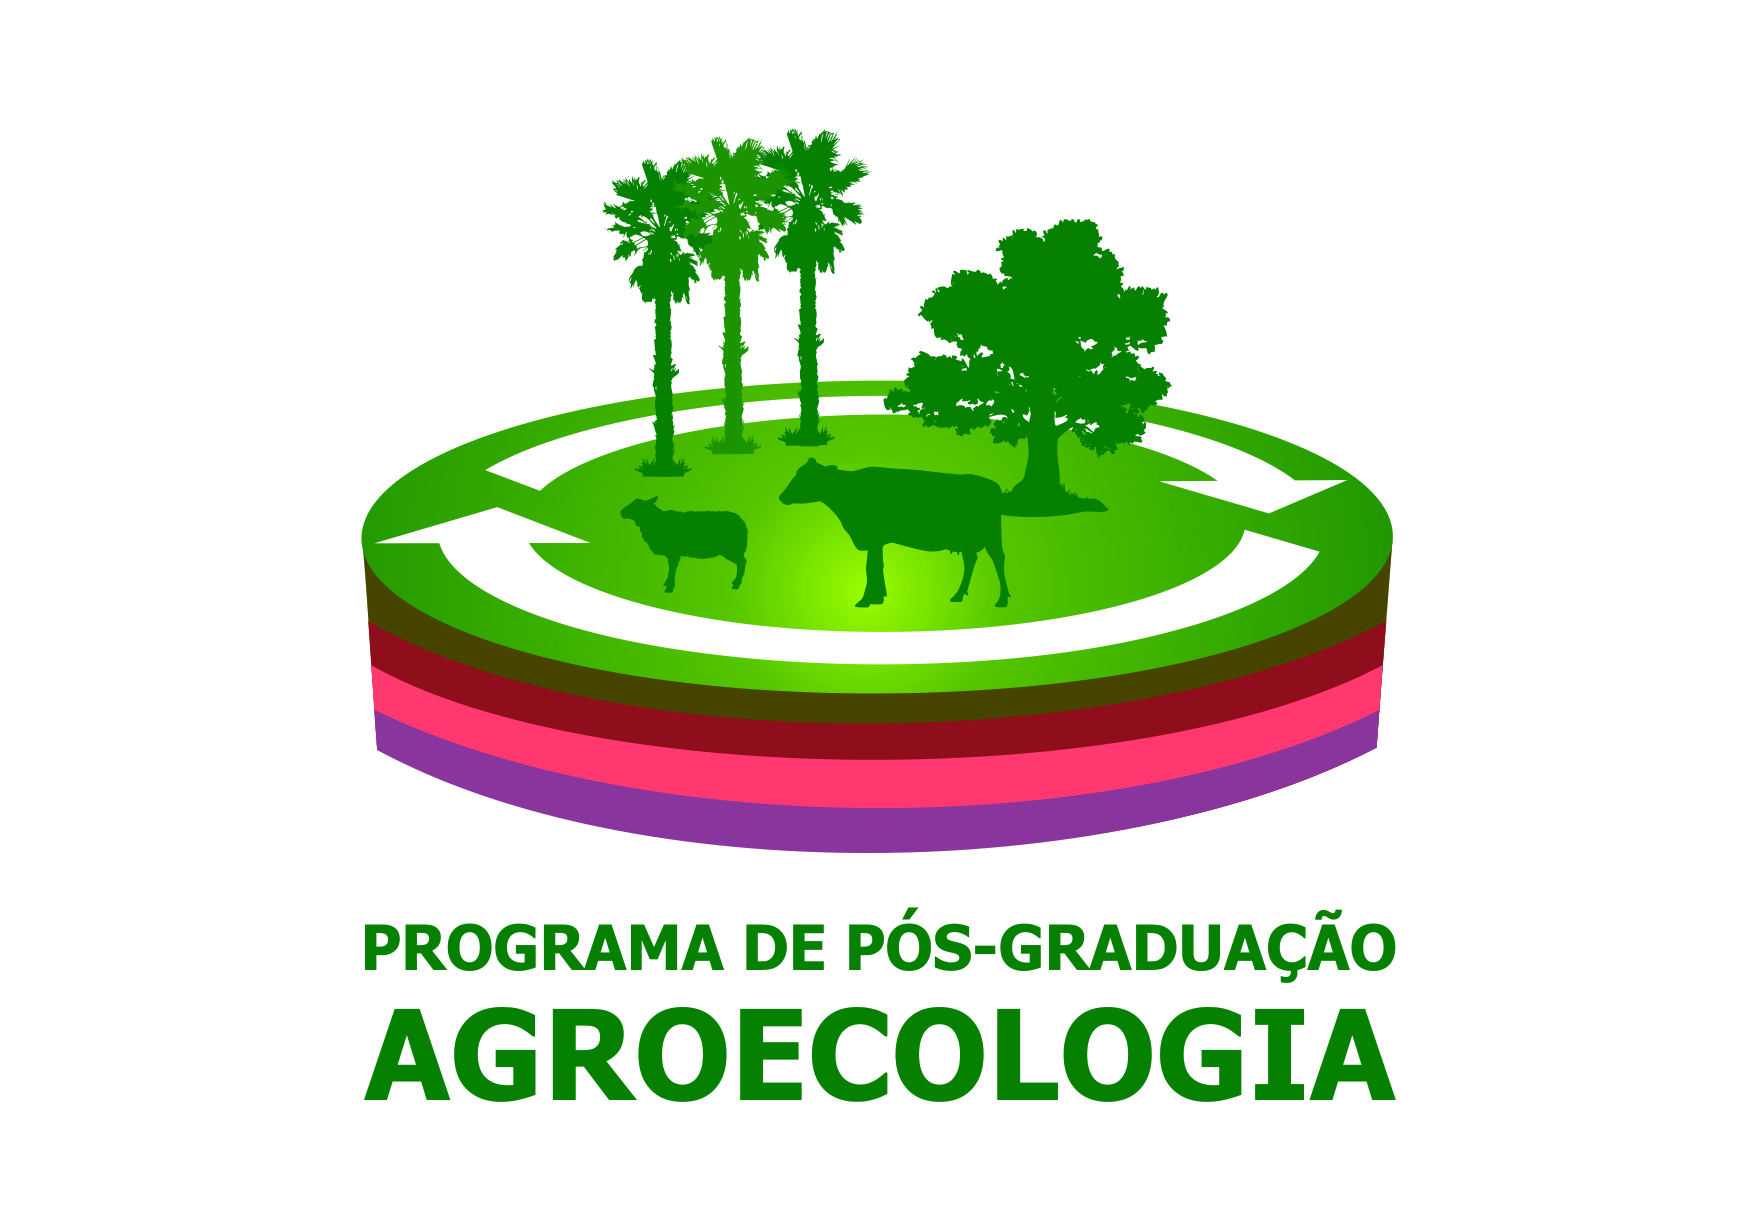 Estão abertas inscrições para Mestrado e Doutorado em Agroecologia da UEMA